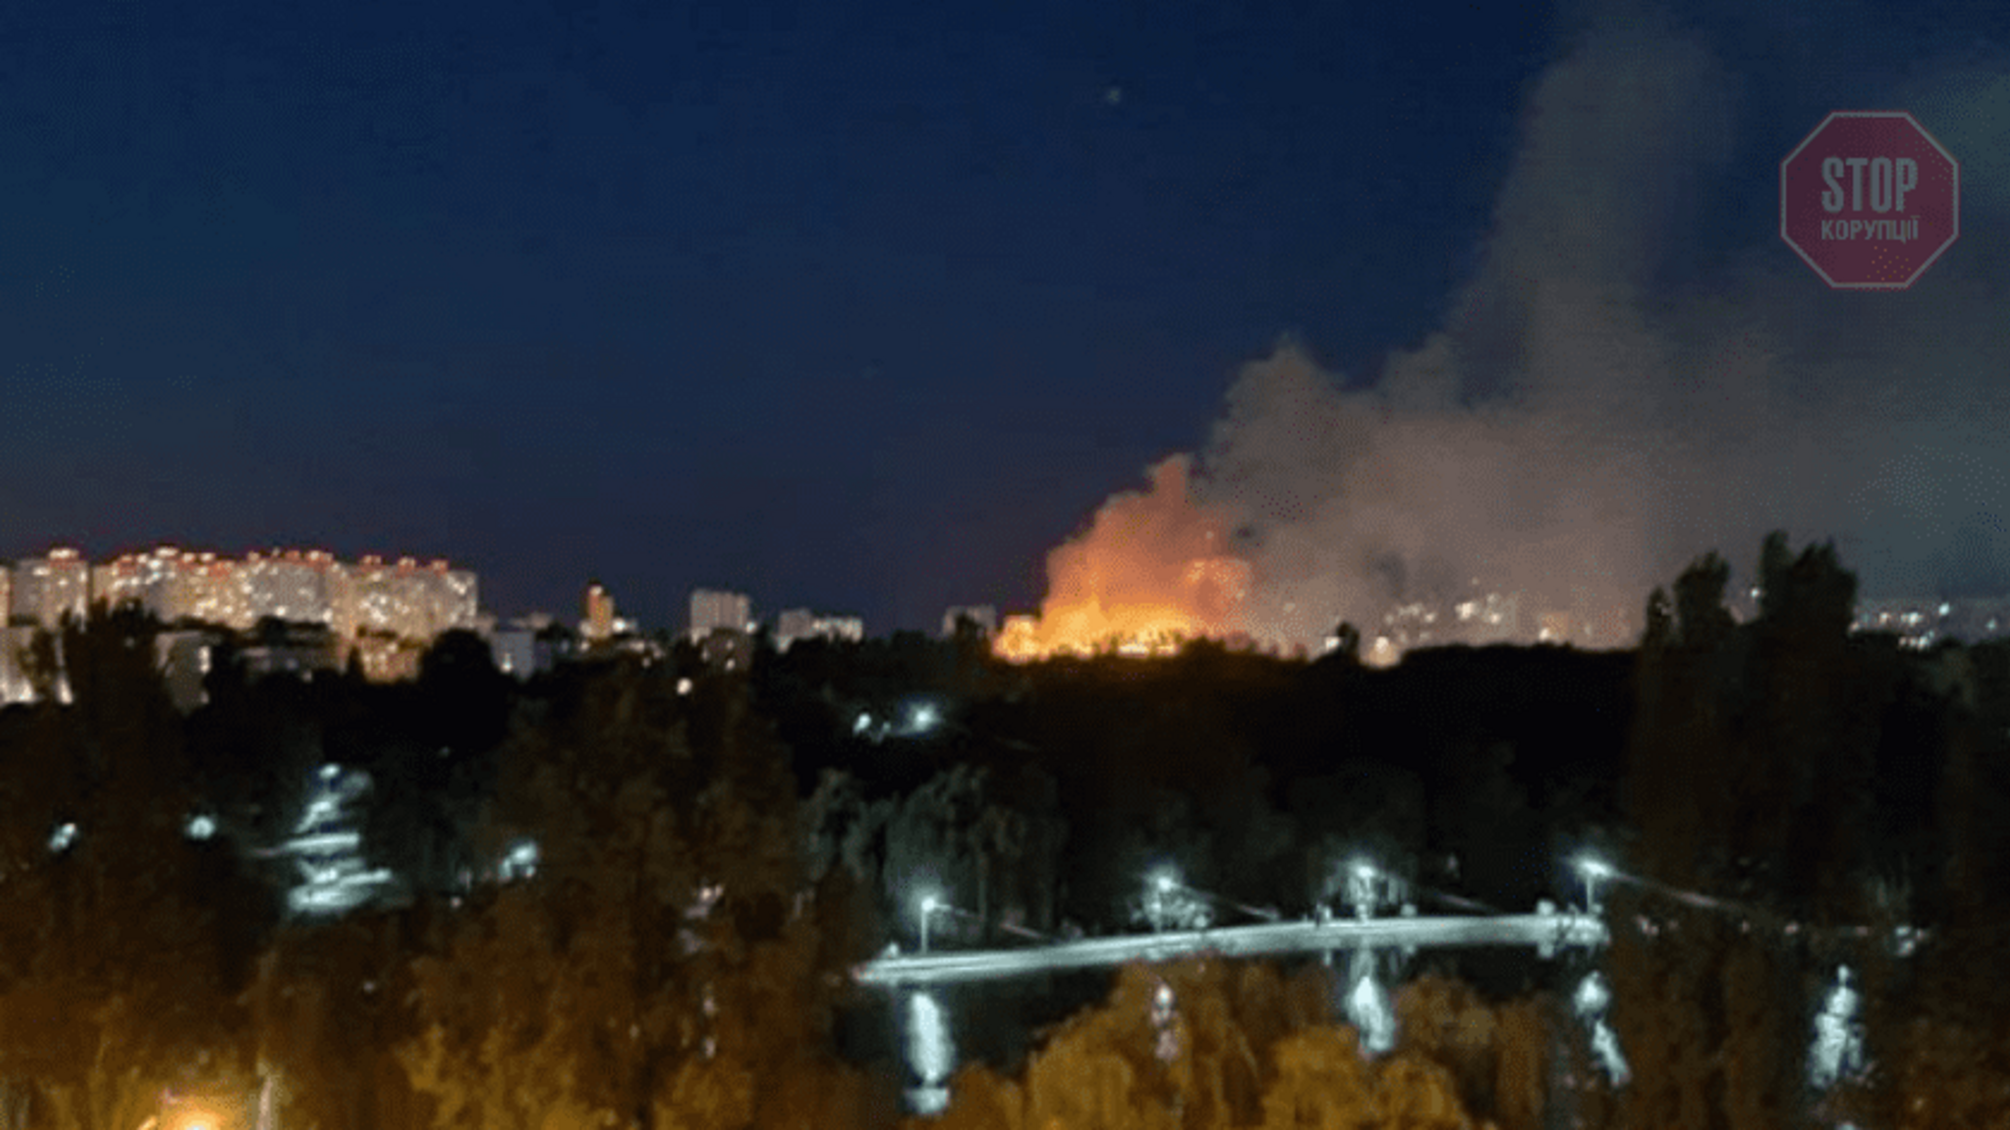 На Киевщине в жилом доме вспыхнул крупный пожар (видео)